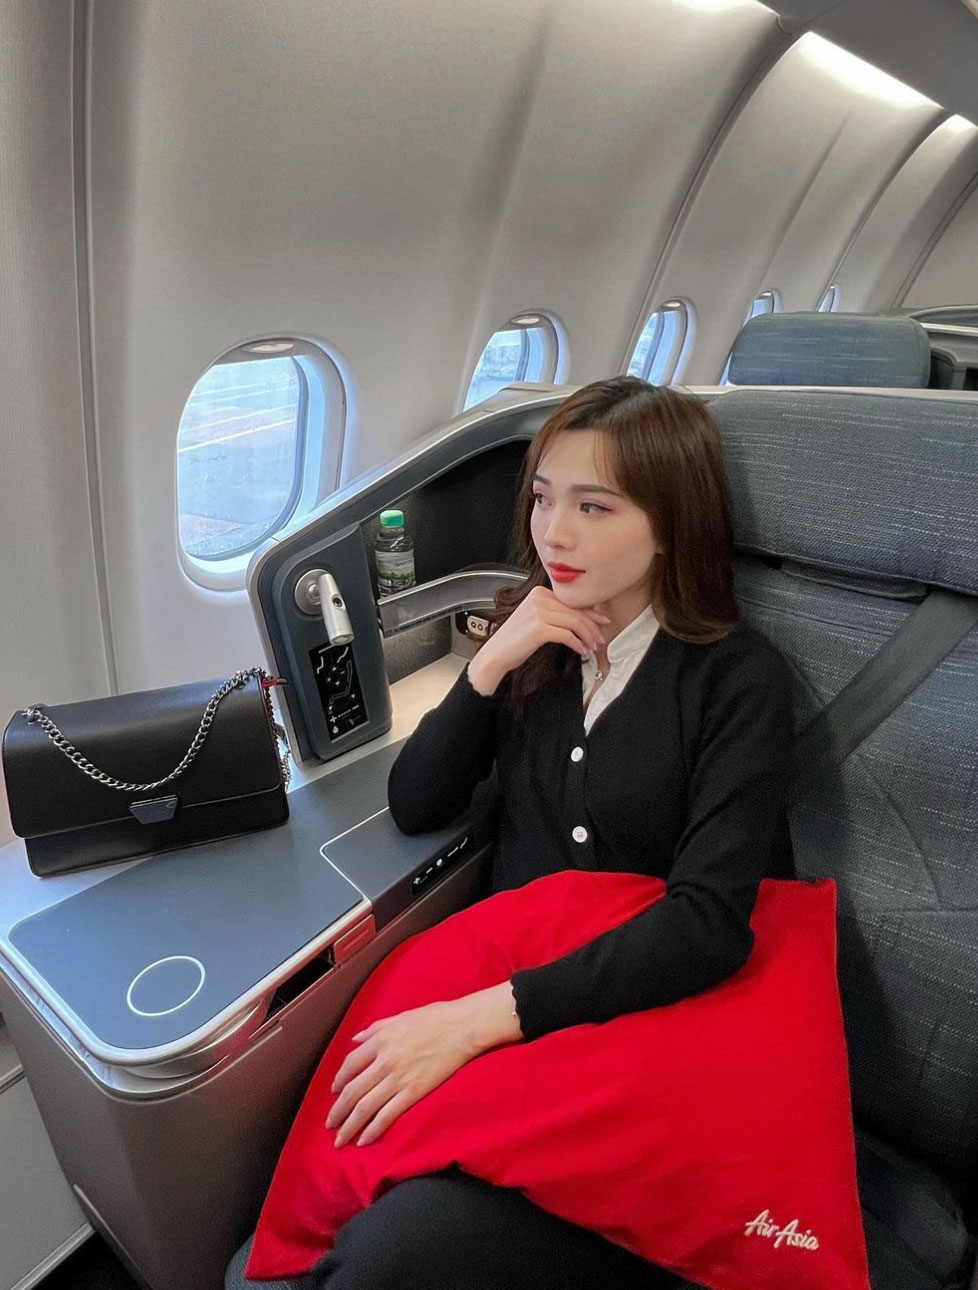 Королева ЗМІ та соцмереж: як зараз виглядає найкрасивіша стюардеса у світі